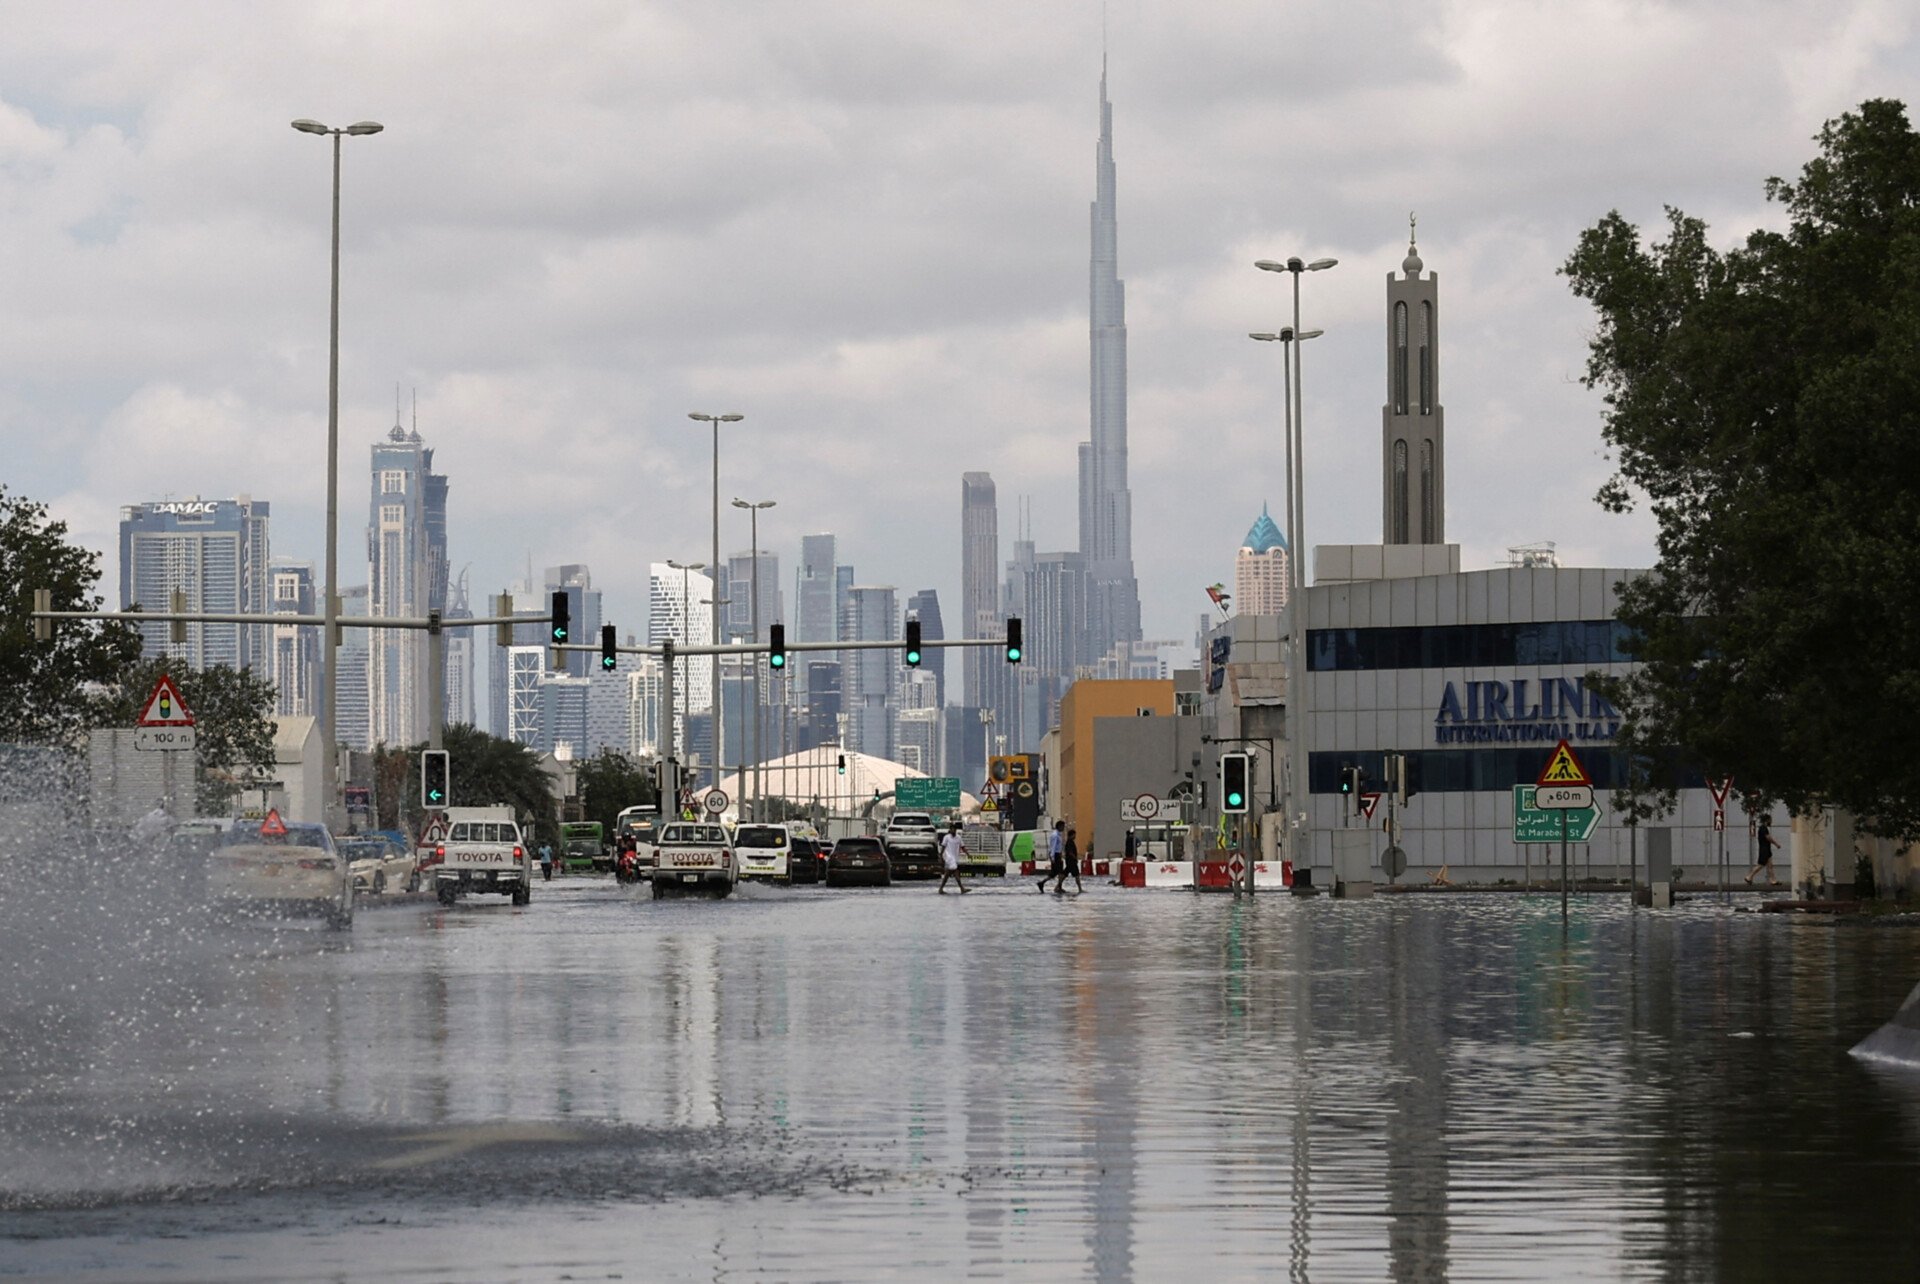 η σπορά των νεφών στο ντουμπάι ύποπτη για τον κατακλυσμό που χτύπησε την πόλη